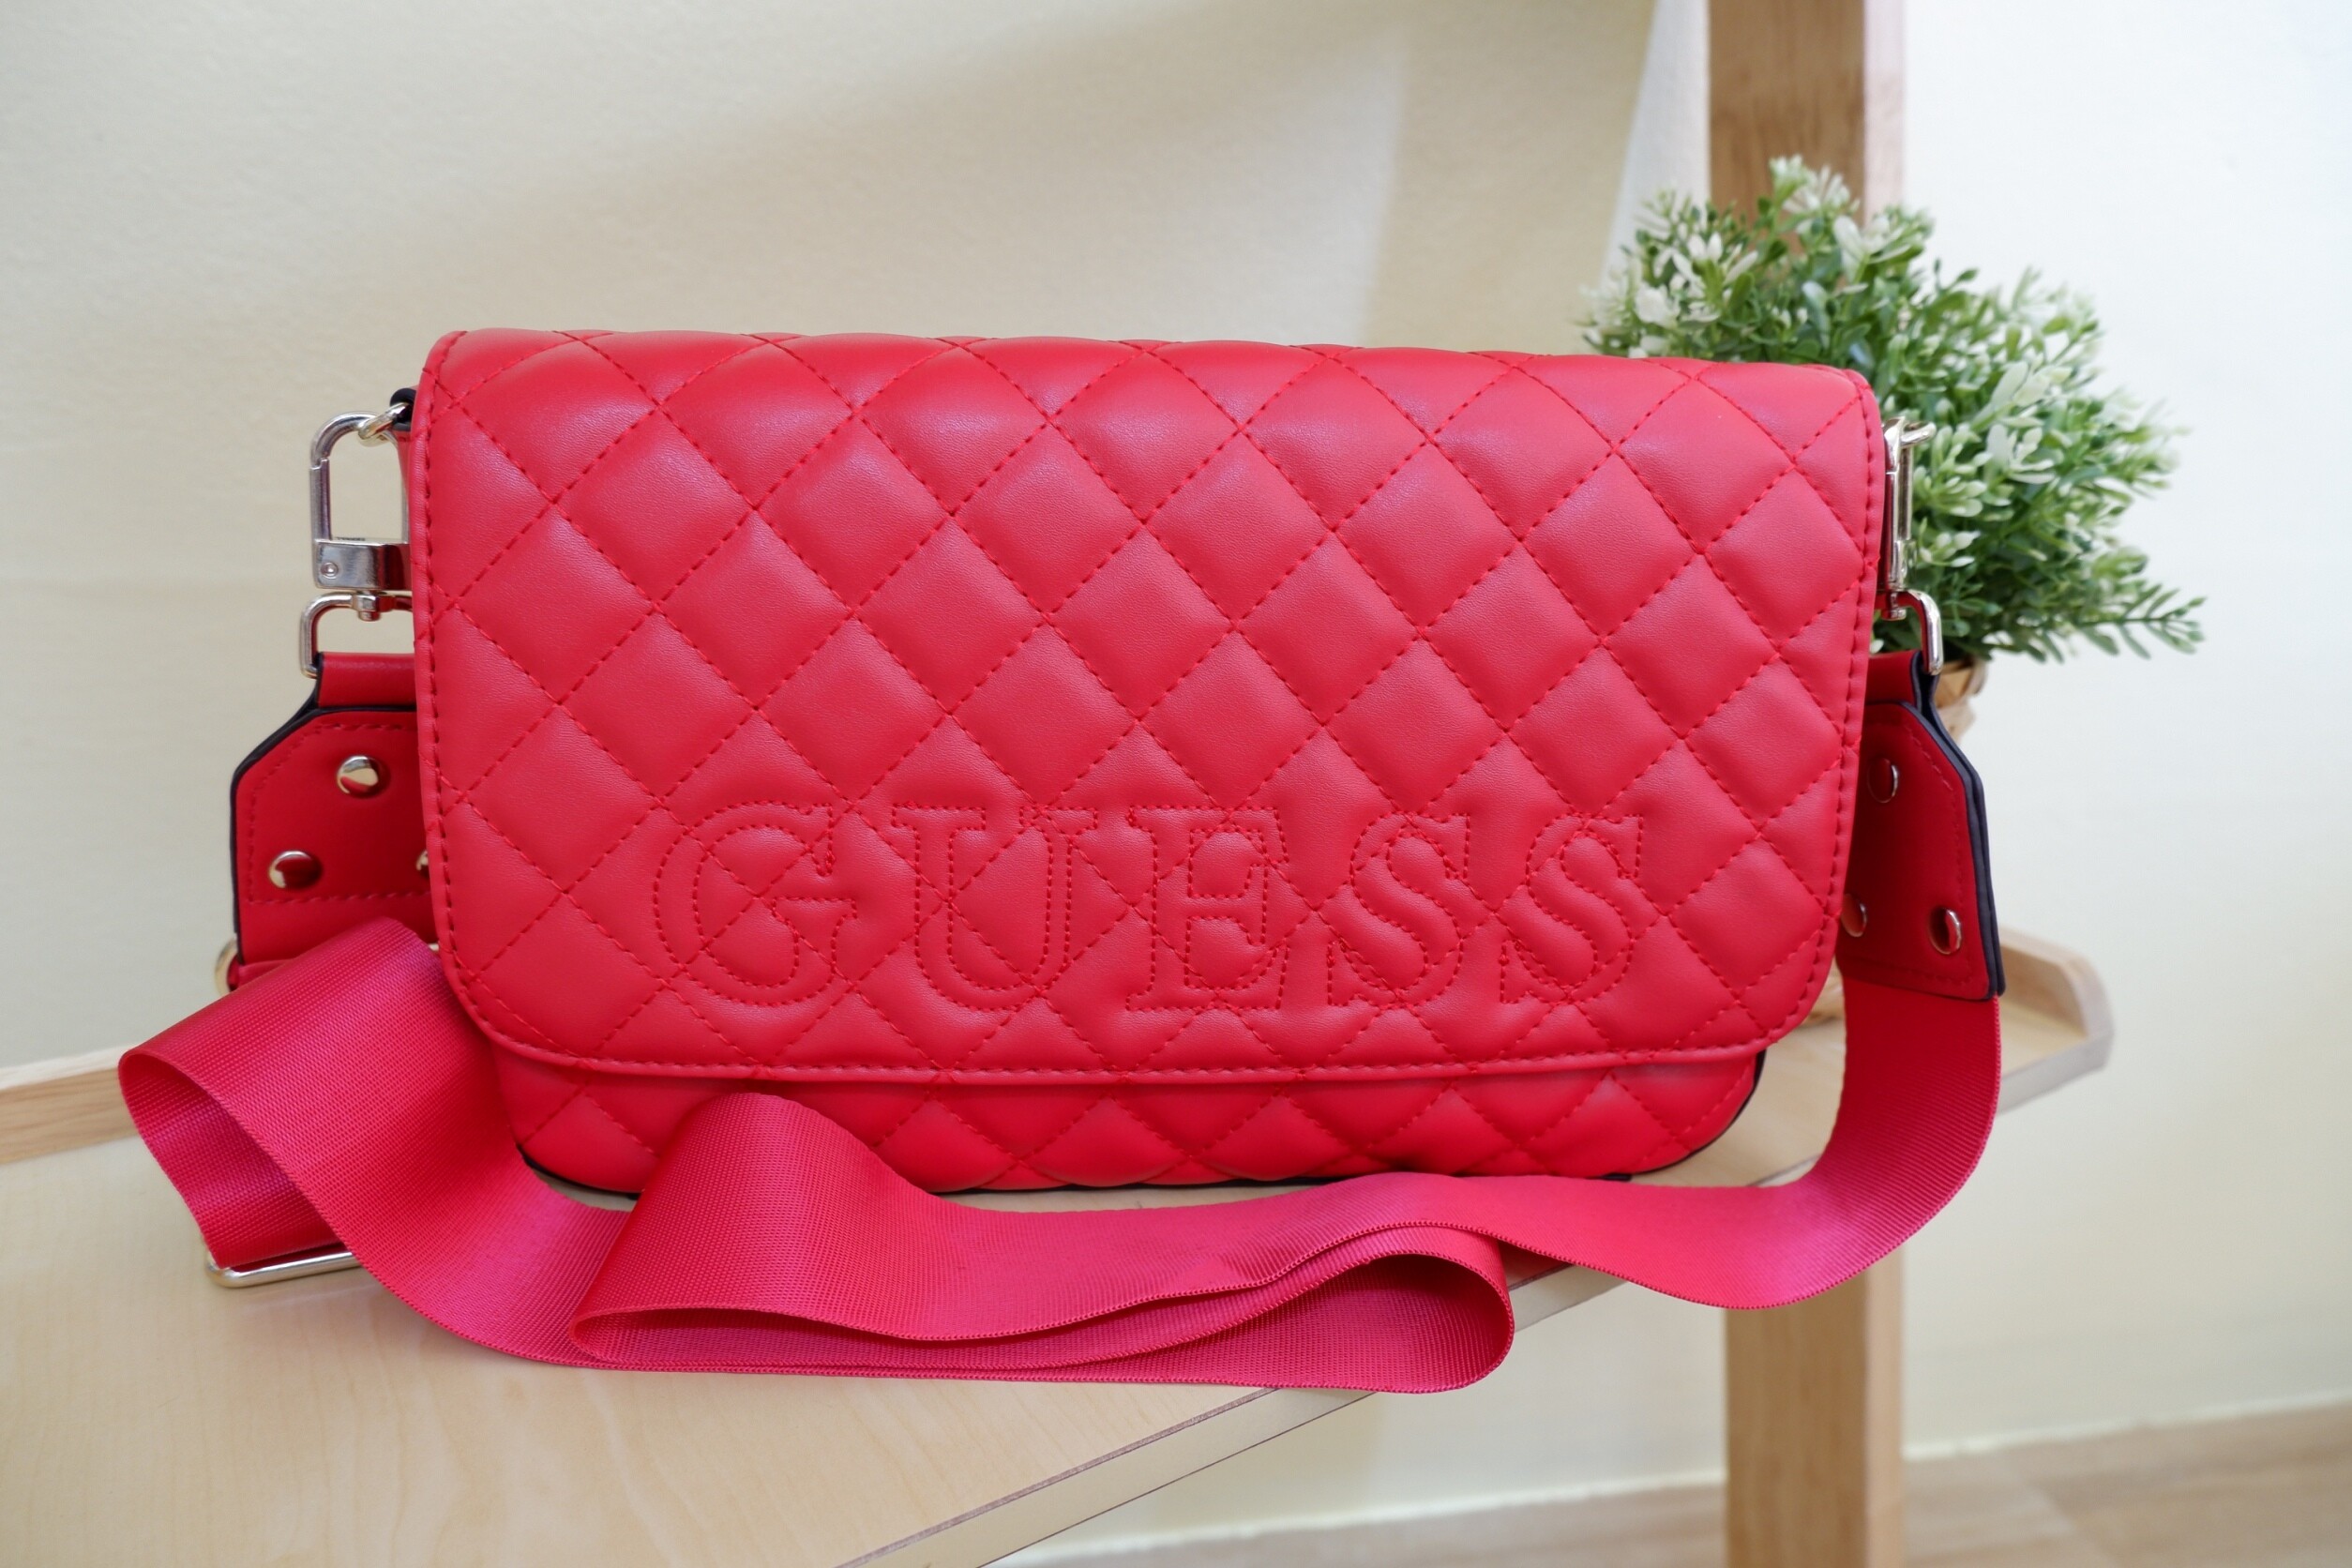 GUESS Shoulder Bag กระเป๋าสะพายข้าง สีสันสดใส ด้านหน้าด้ายปักชื่อแบรนด์ สี แดง สี แดง